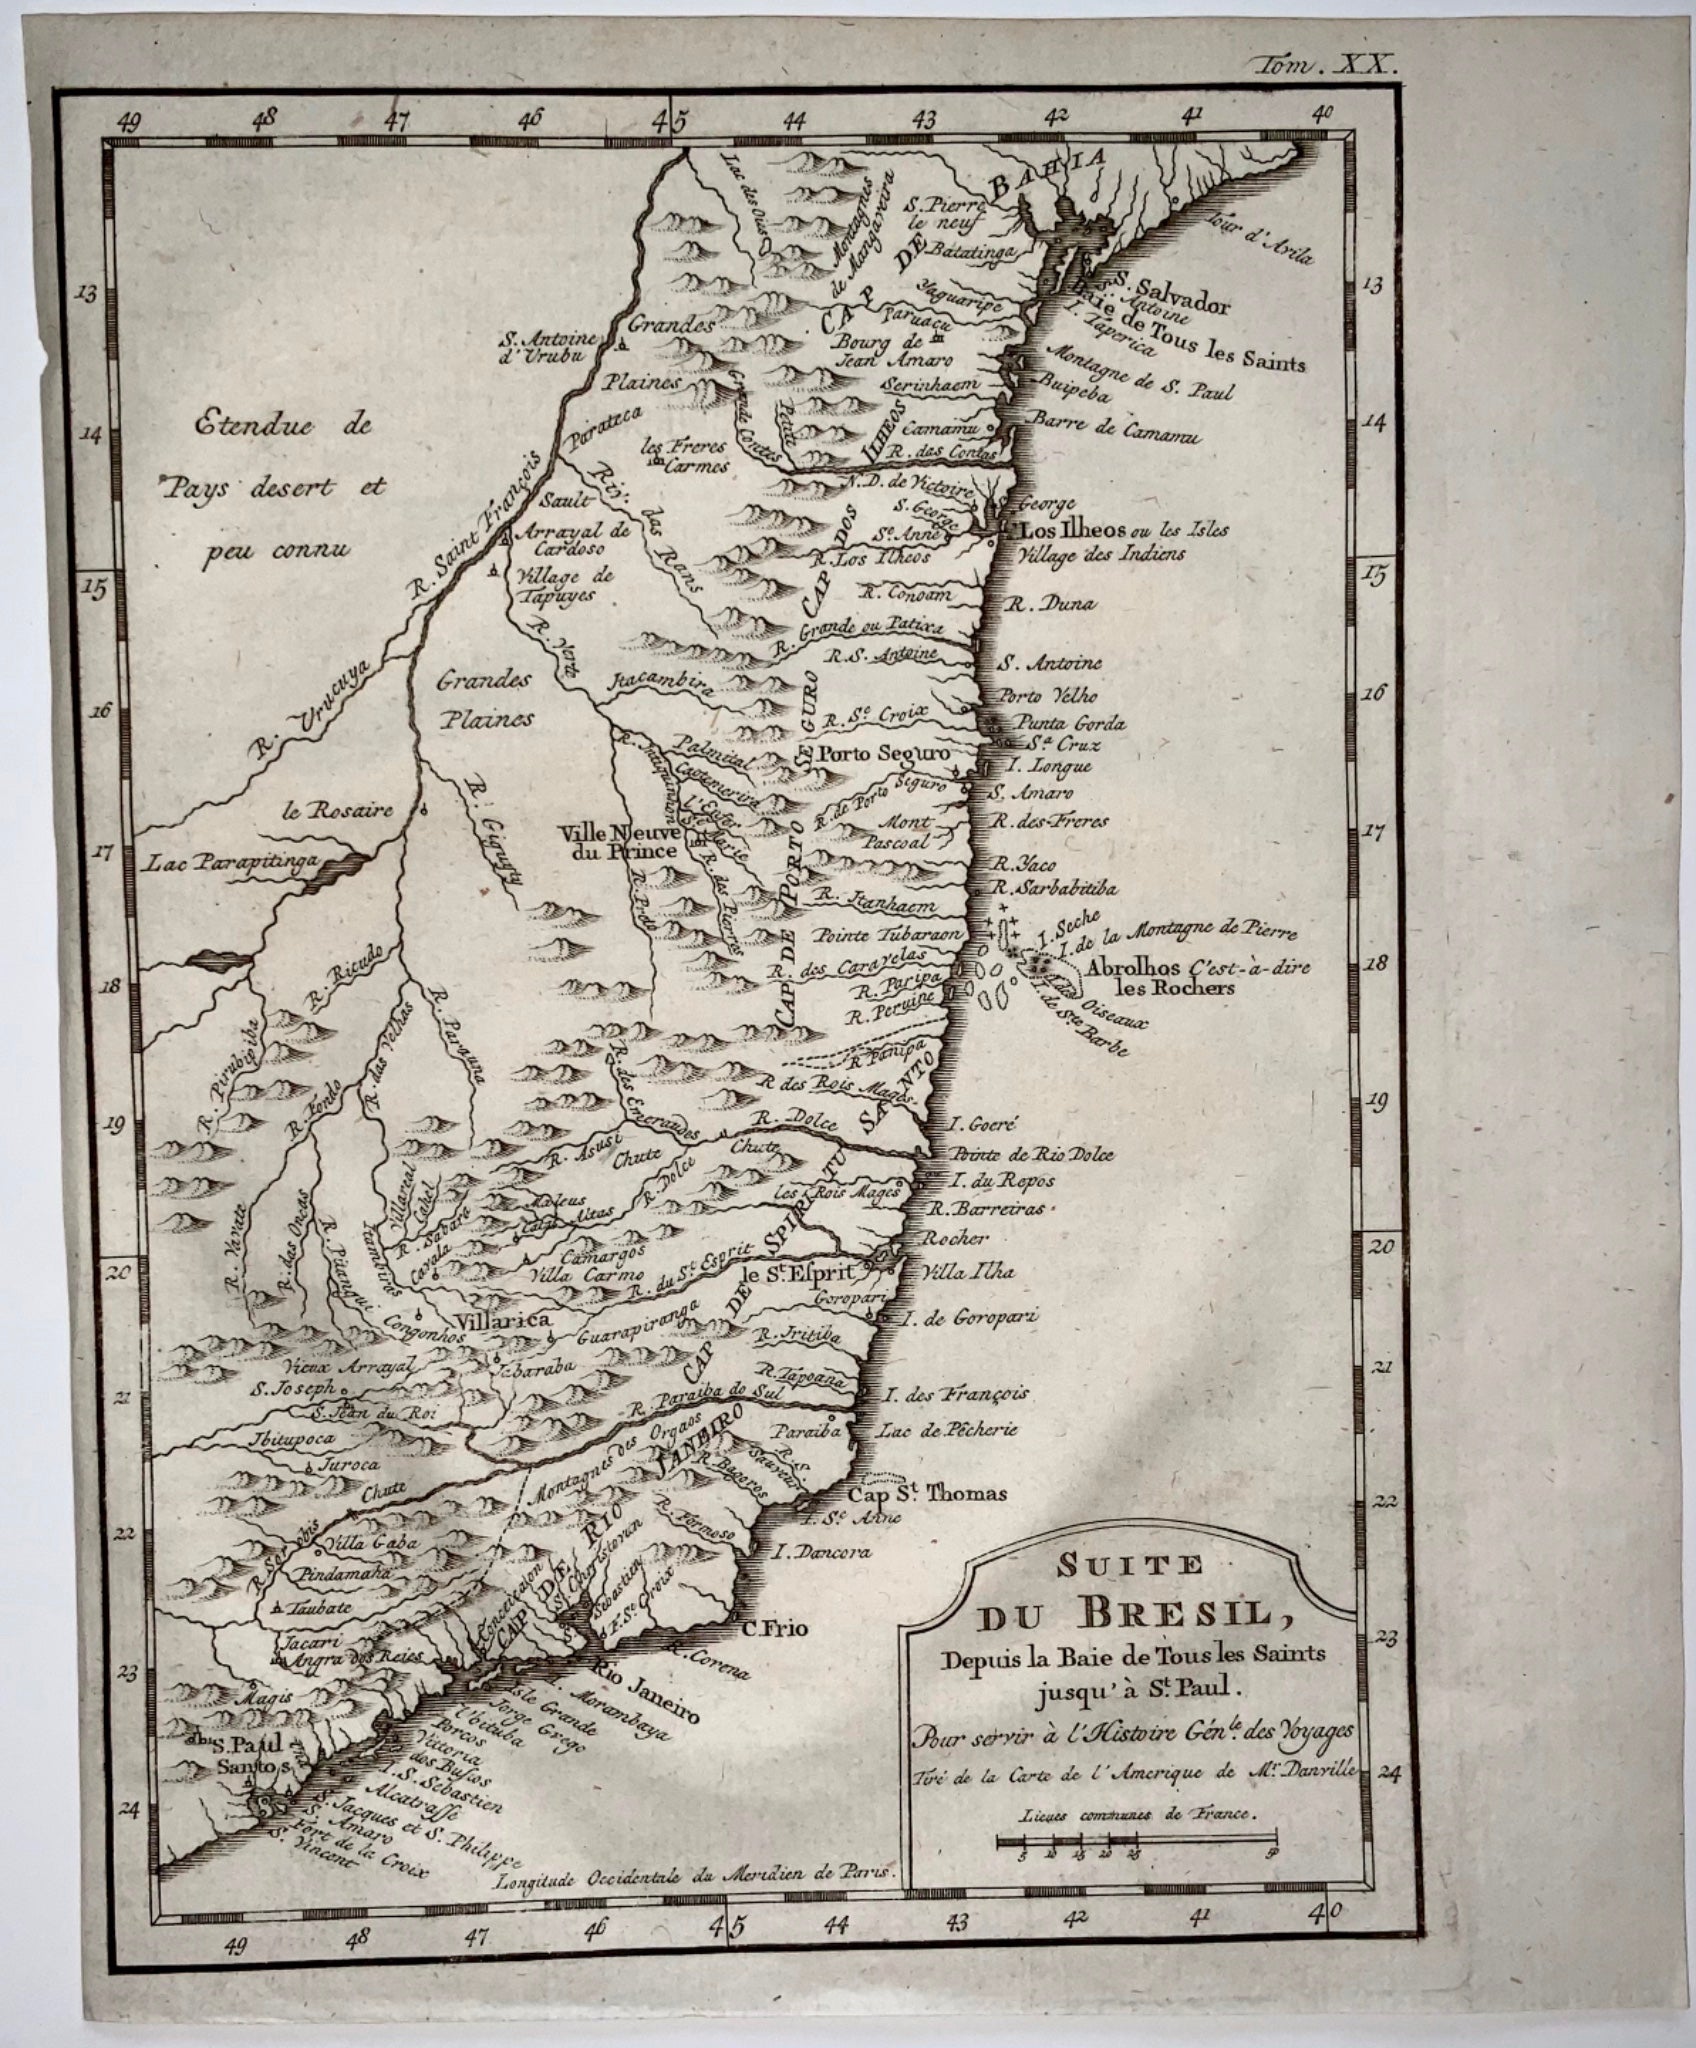 1757 Jacques BELLIN - Coast of Brazil ‘Baie de Tous les Saints’ South America - Map Travel